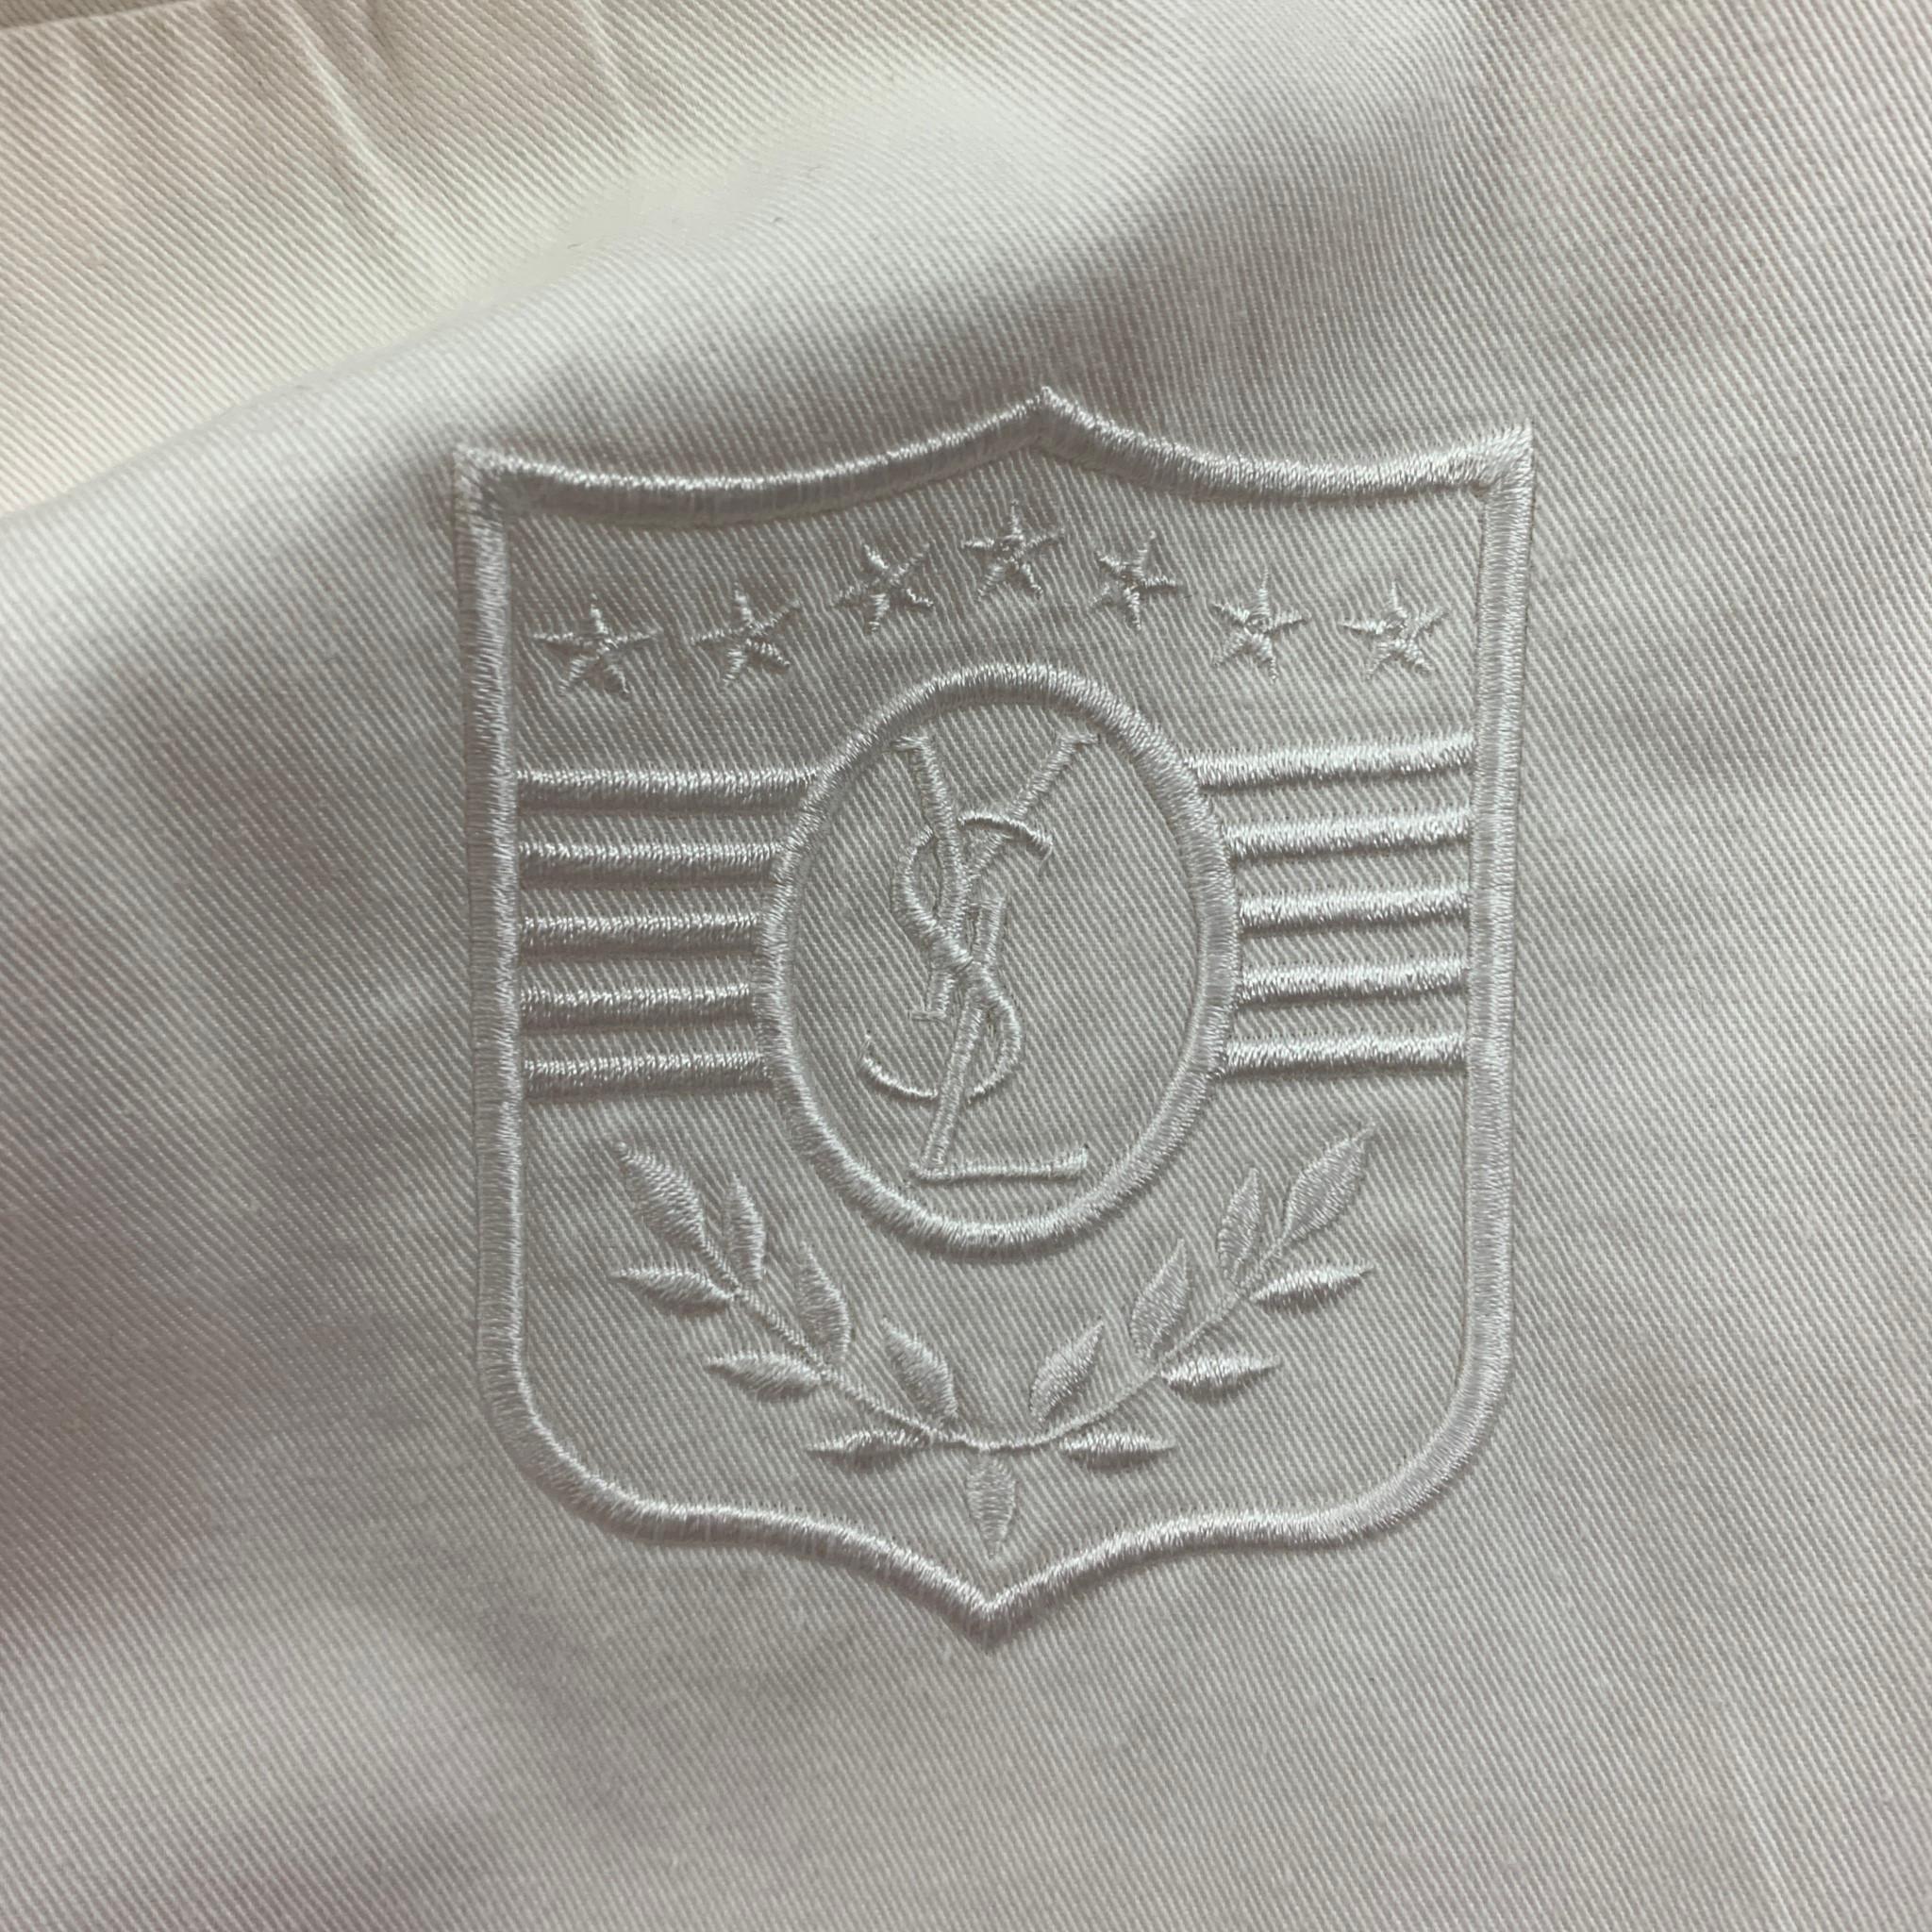 Vintage YVES SAINT LAURENT Size M White Cotton Zip Up Jacket 1